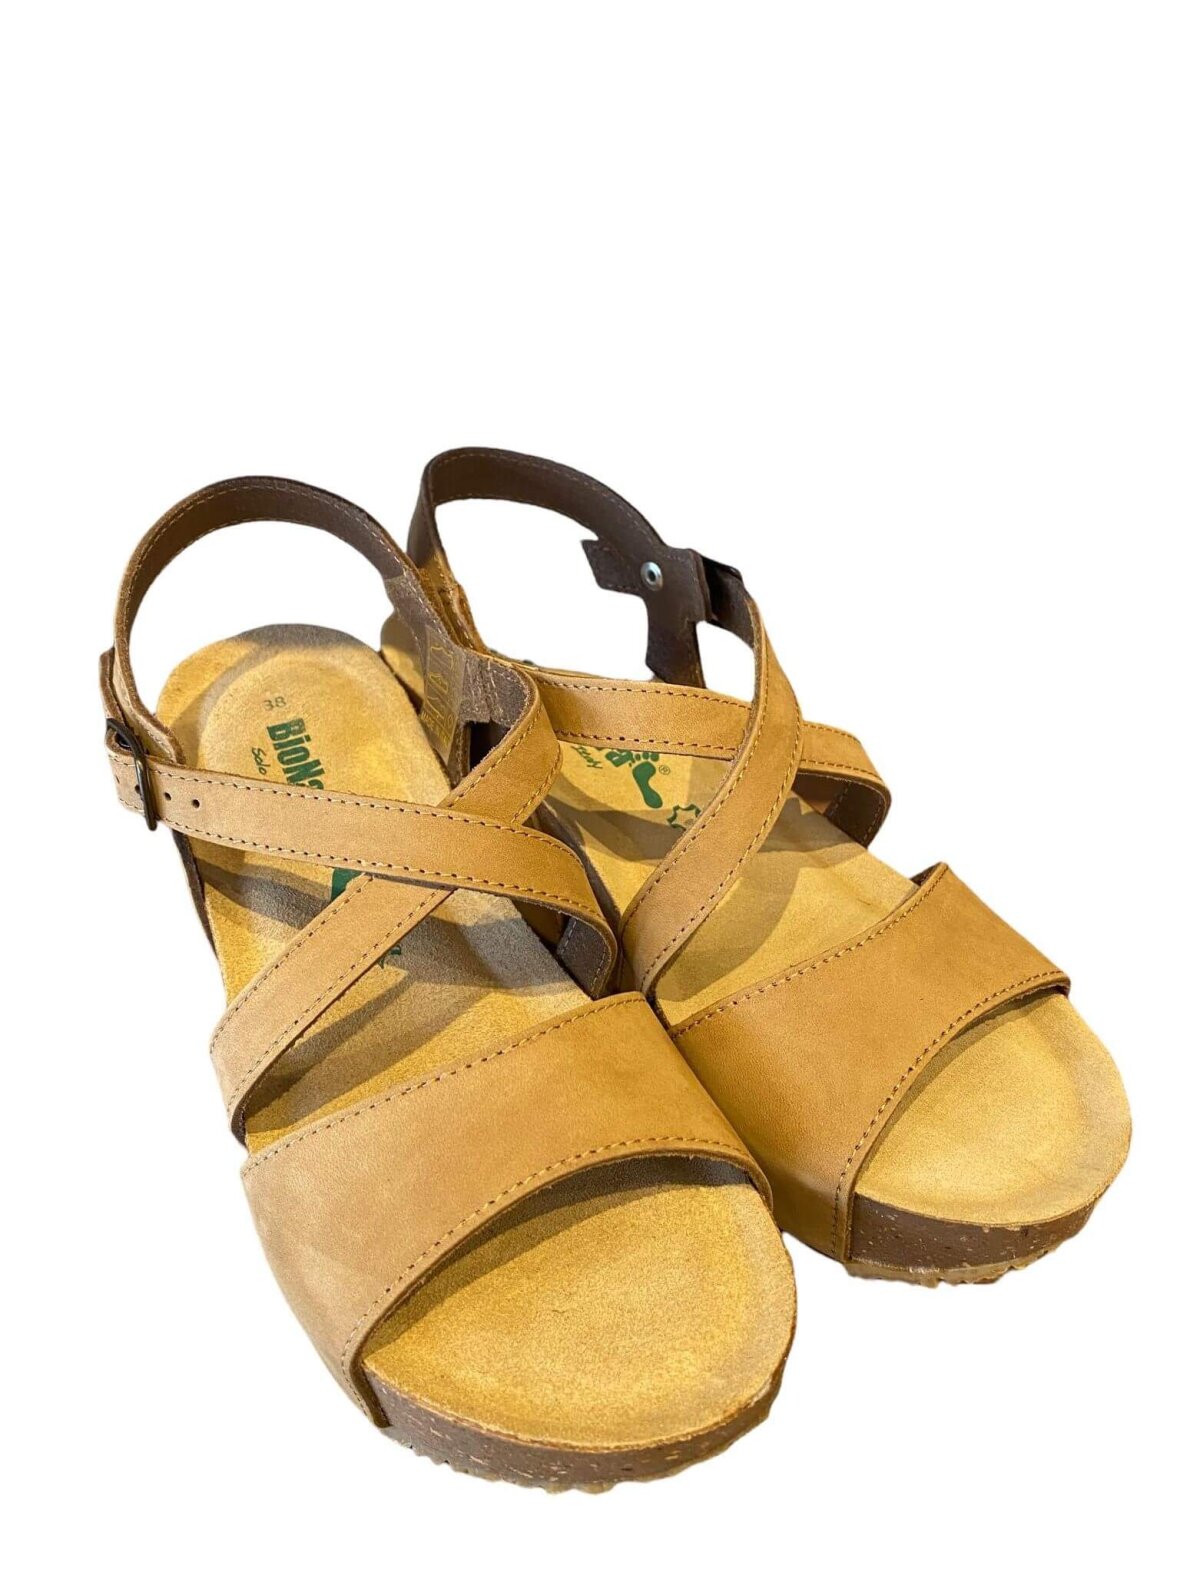 Shop sandaler BioNatura totora/mørk sand farvet nubuck hos Helle M i